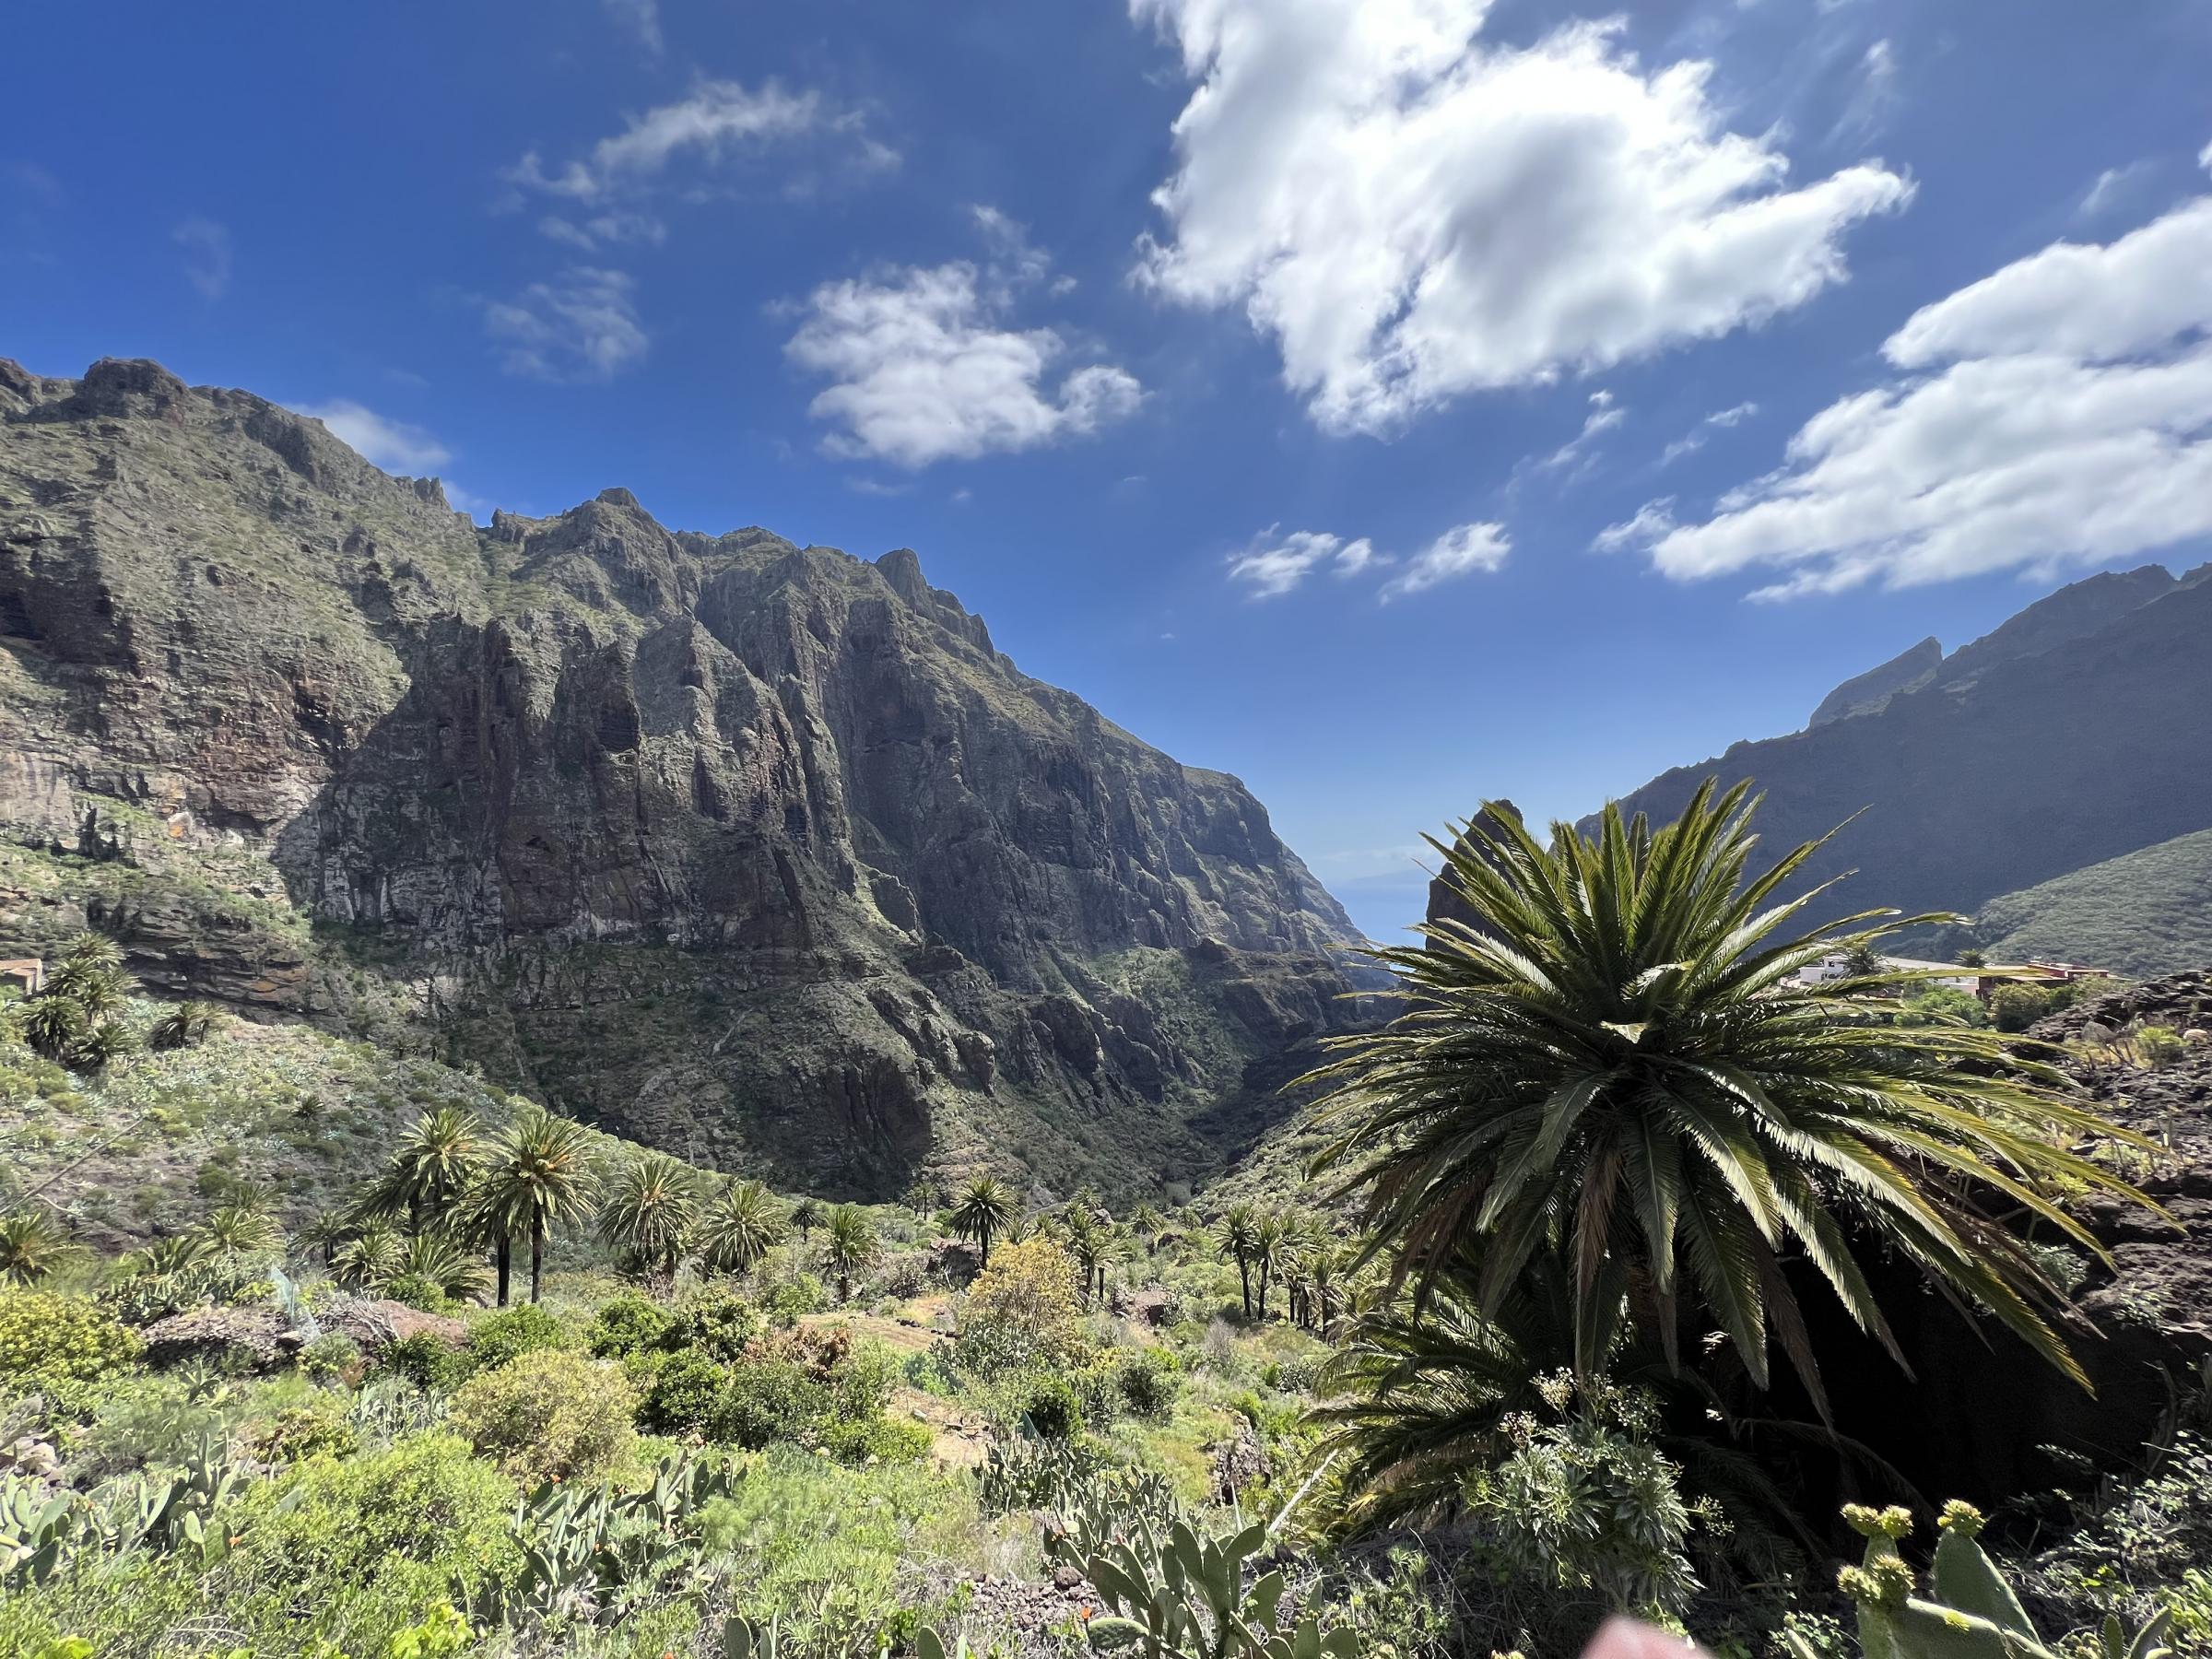 Tenerife: La isla española rodeada de salinidad tiene conexiones escocesas más allá de la bandera